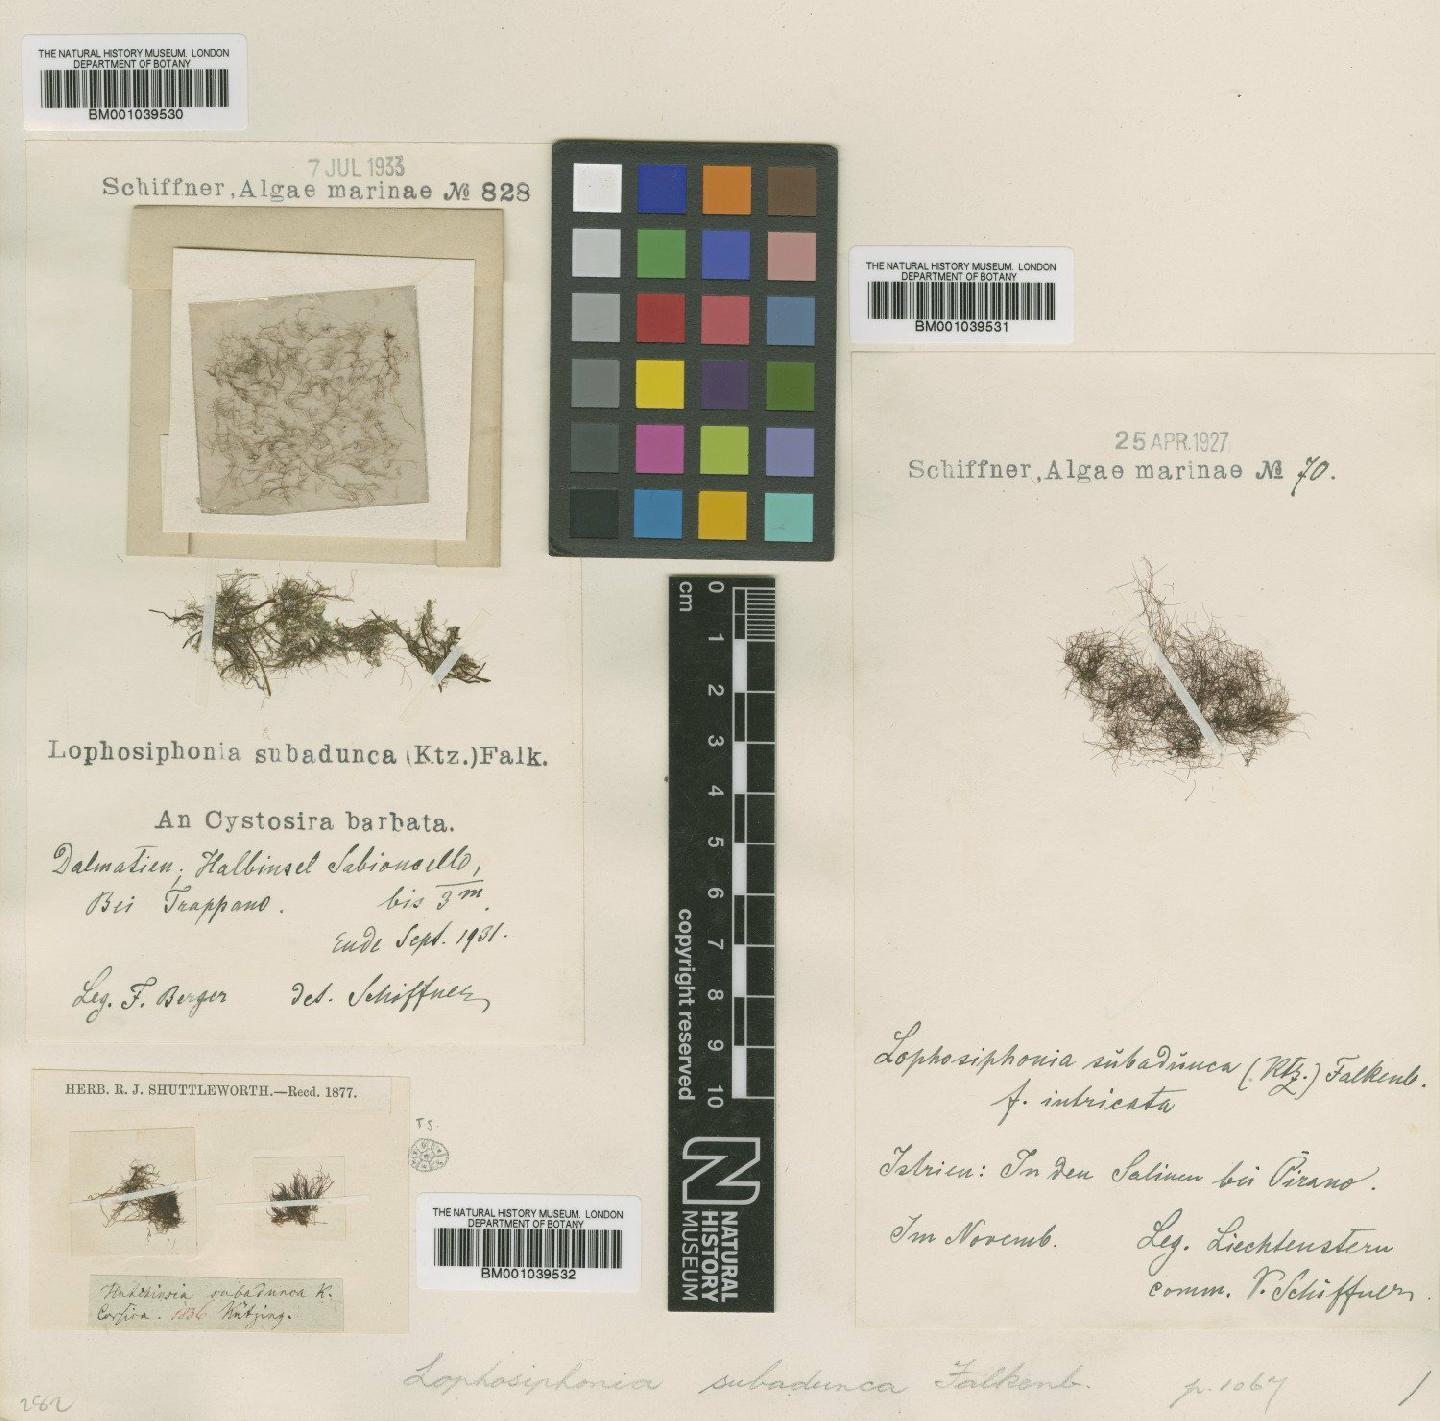 To NHMUK collection (Lophosiphonia subadunca (Kütz.) Falkenb.; NHMUK:ecatalogue:722787)